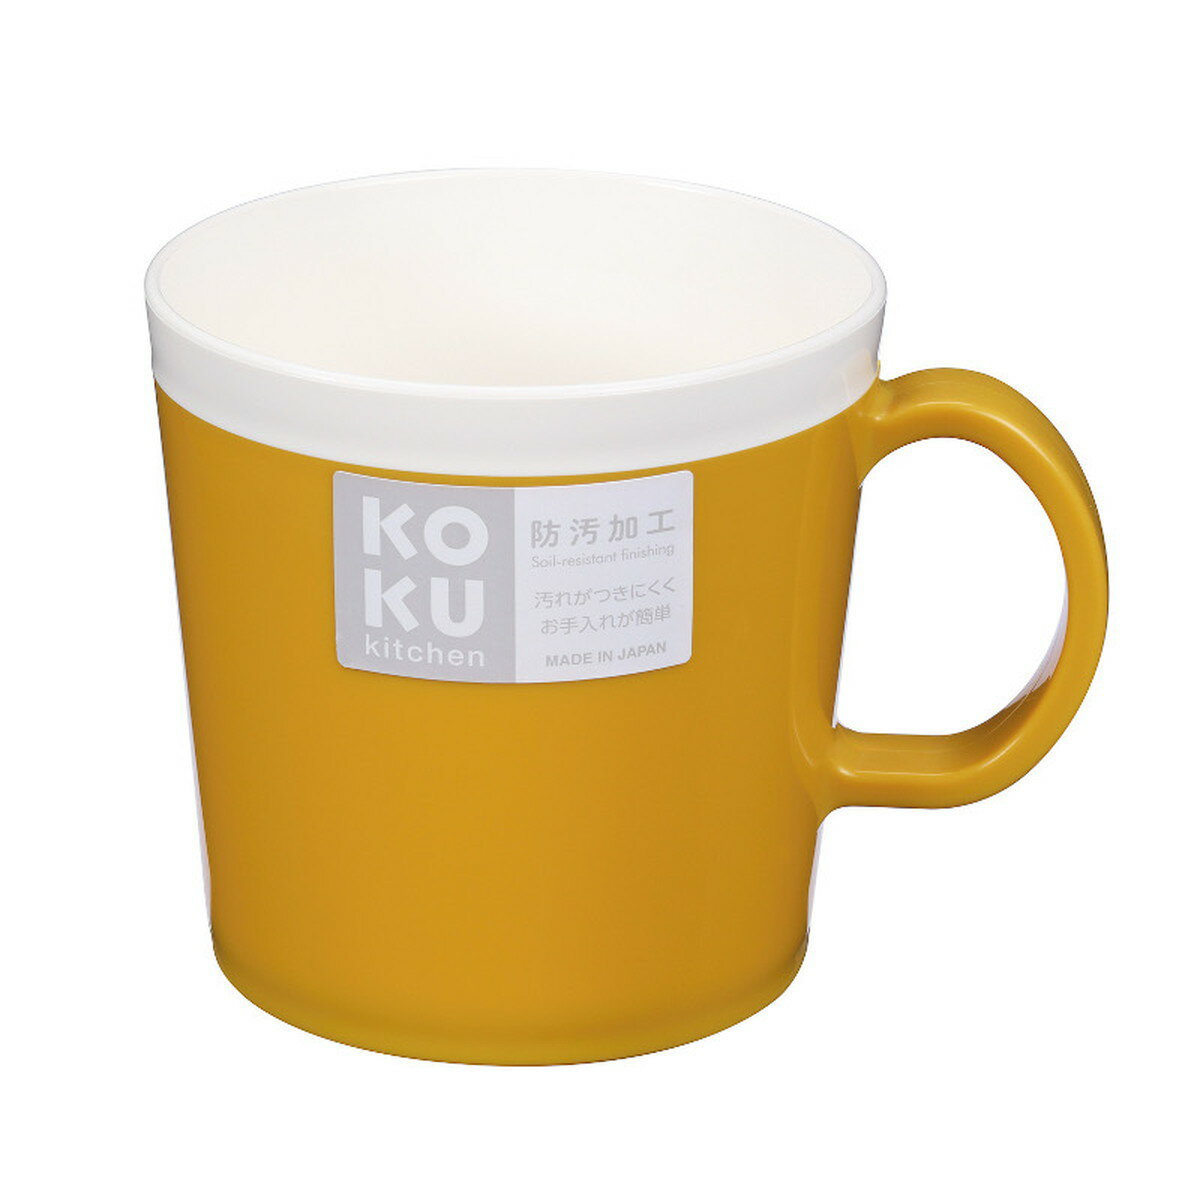 小久保工業所 KOKU マグカップ マスタードイエローの商品画像